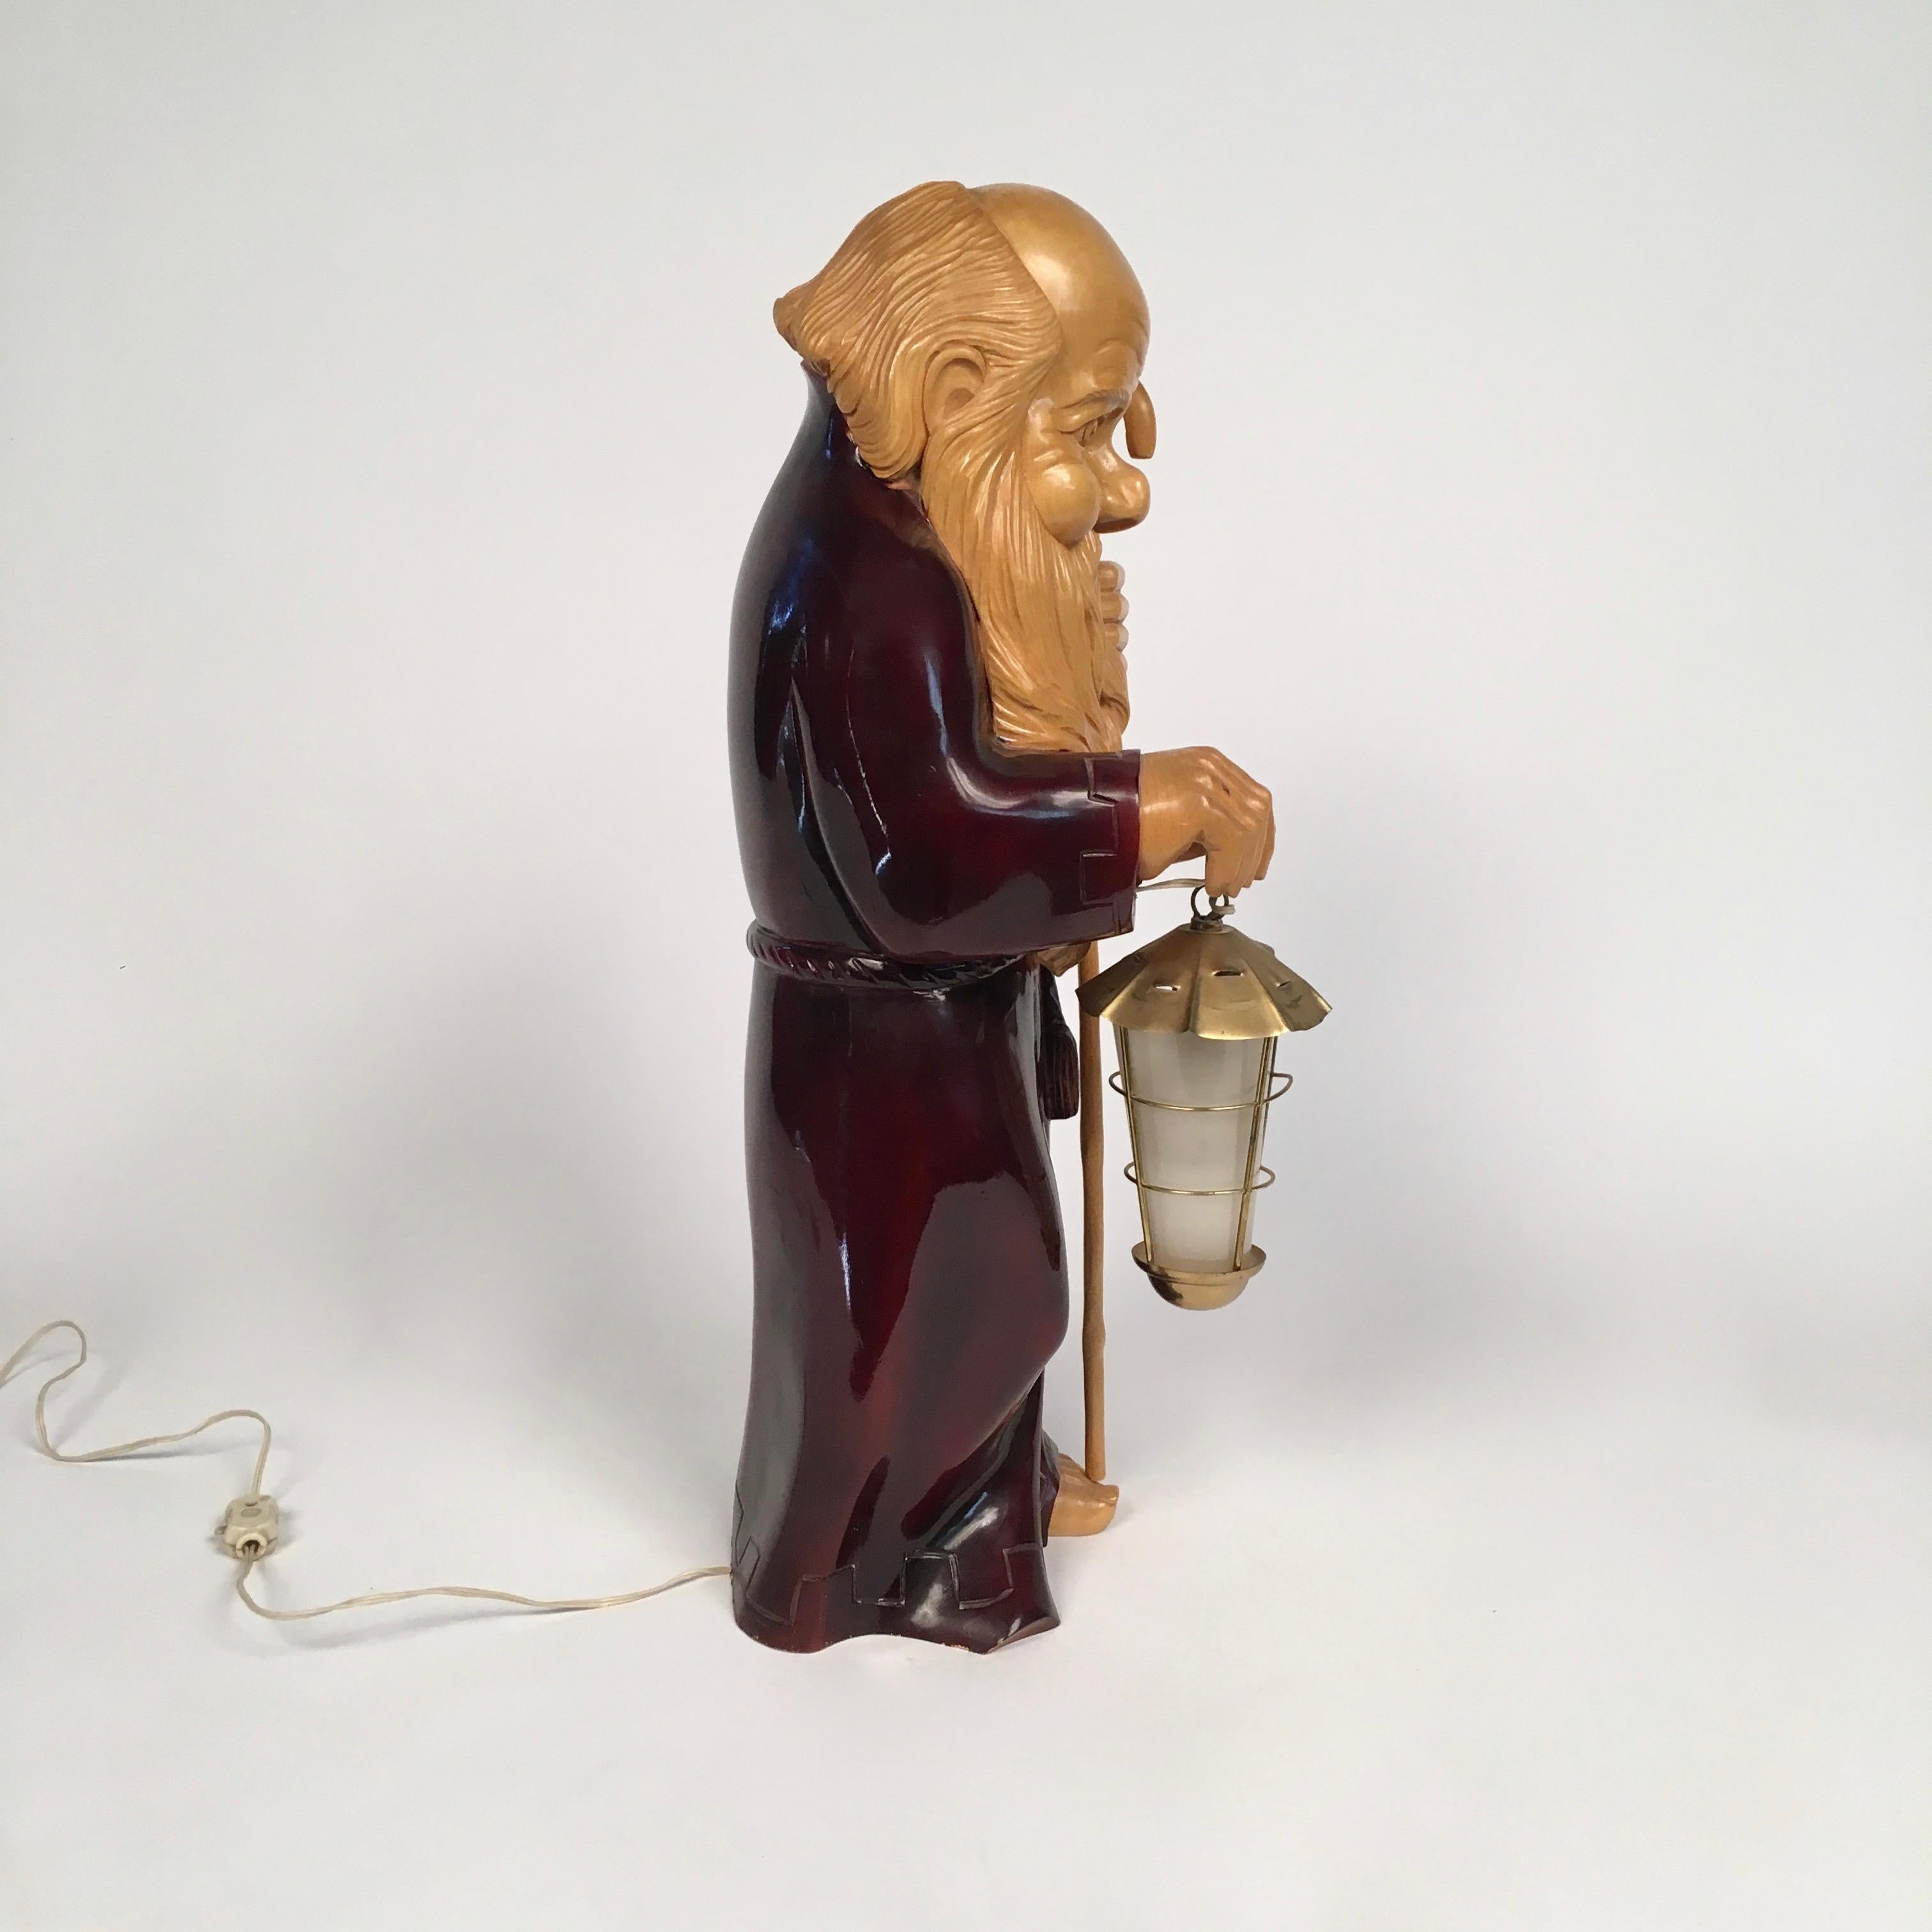 Peu de pièces d'Aldo Tura peuvent être comparées à cette lampe unique, sculptée à la main dans une seule pièce de bois. Les lampes d'Aldo Tura étaient fabriquées en petites séries et les détails et le niveau de sophistication de la sculpture de